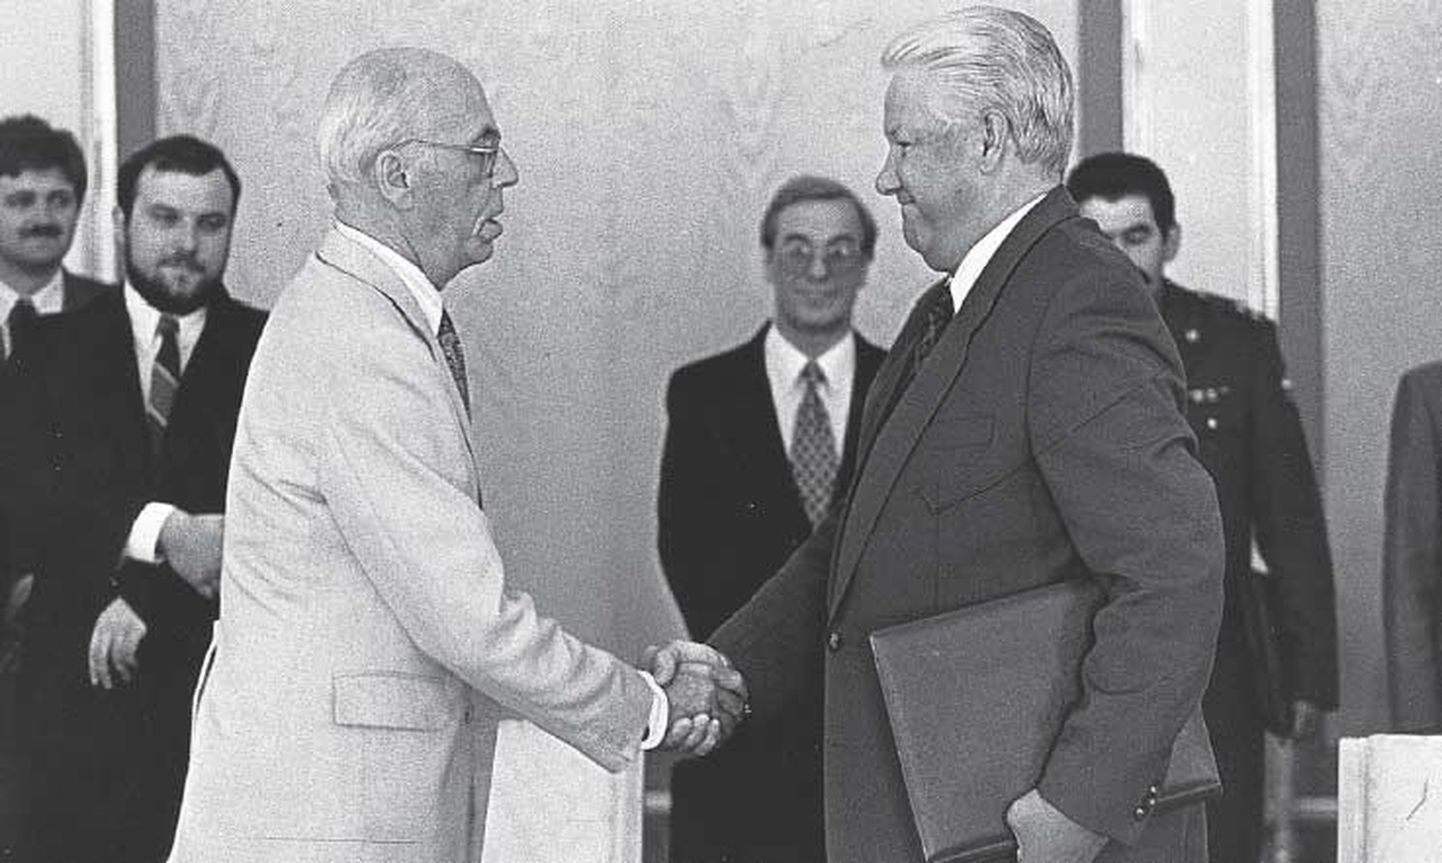 26. juuli 1994: Eesti president Lennart Meri ja Venemaa president Boriss Jeltsin kirjutasid Moskvas alla kokkuleppele, mille järgi lahkusid Eestist viimased okupatsioonivõimude esindajad.